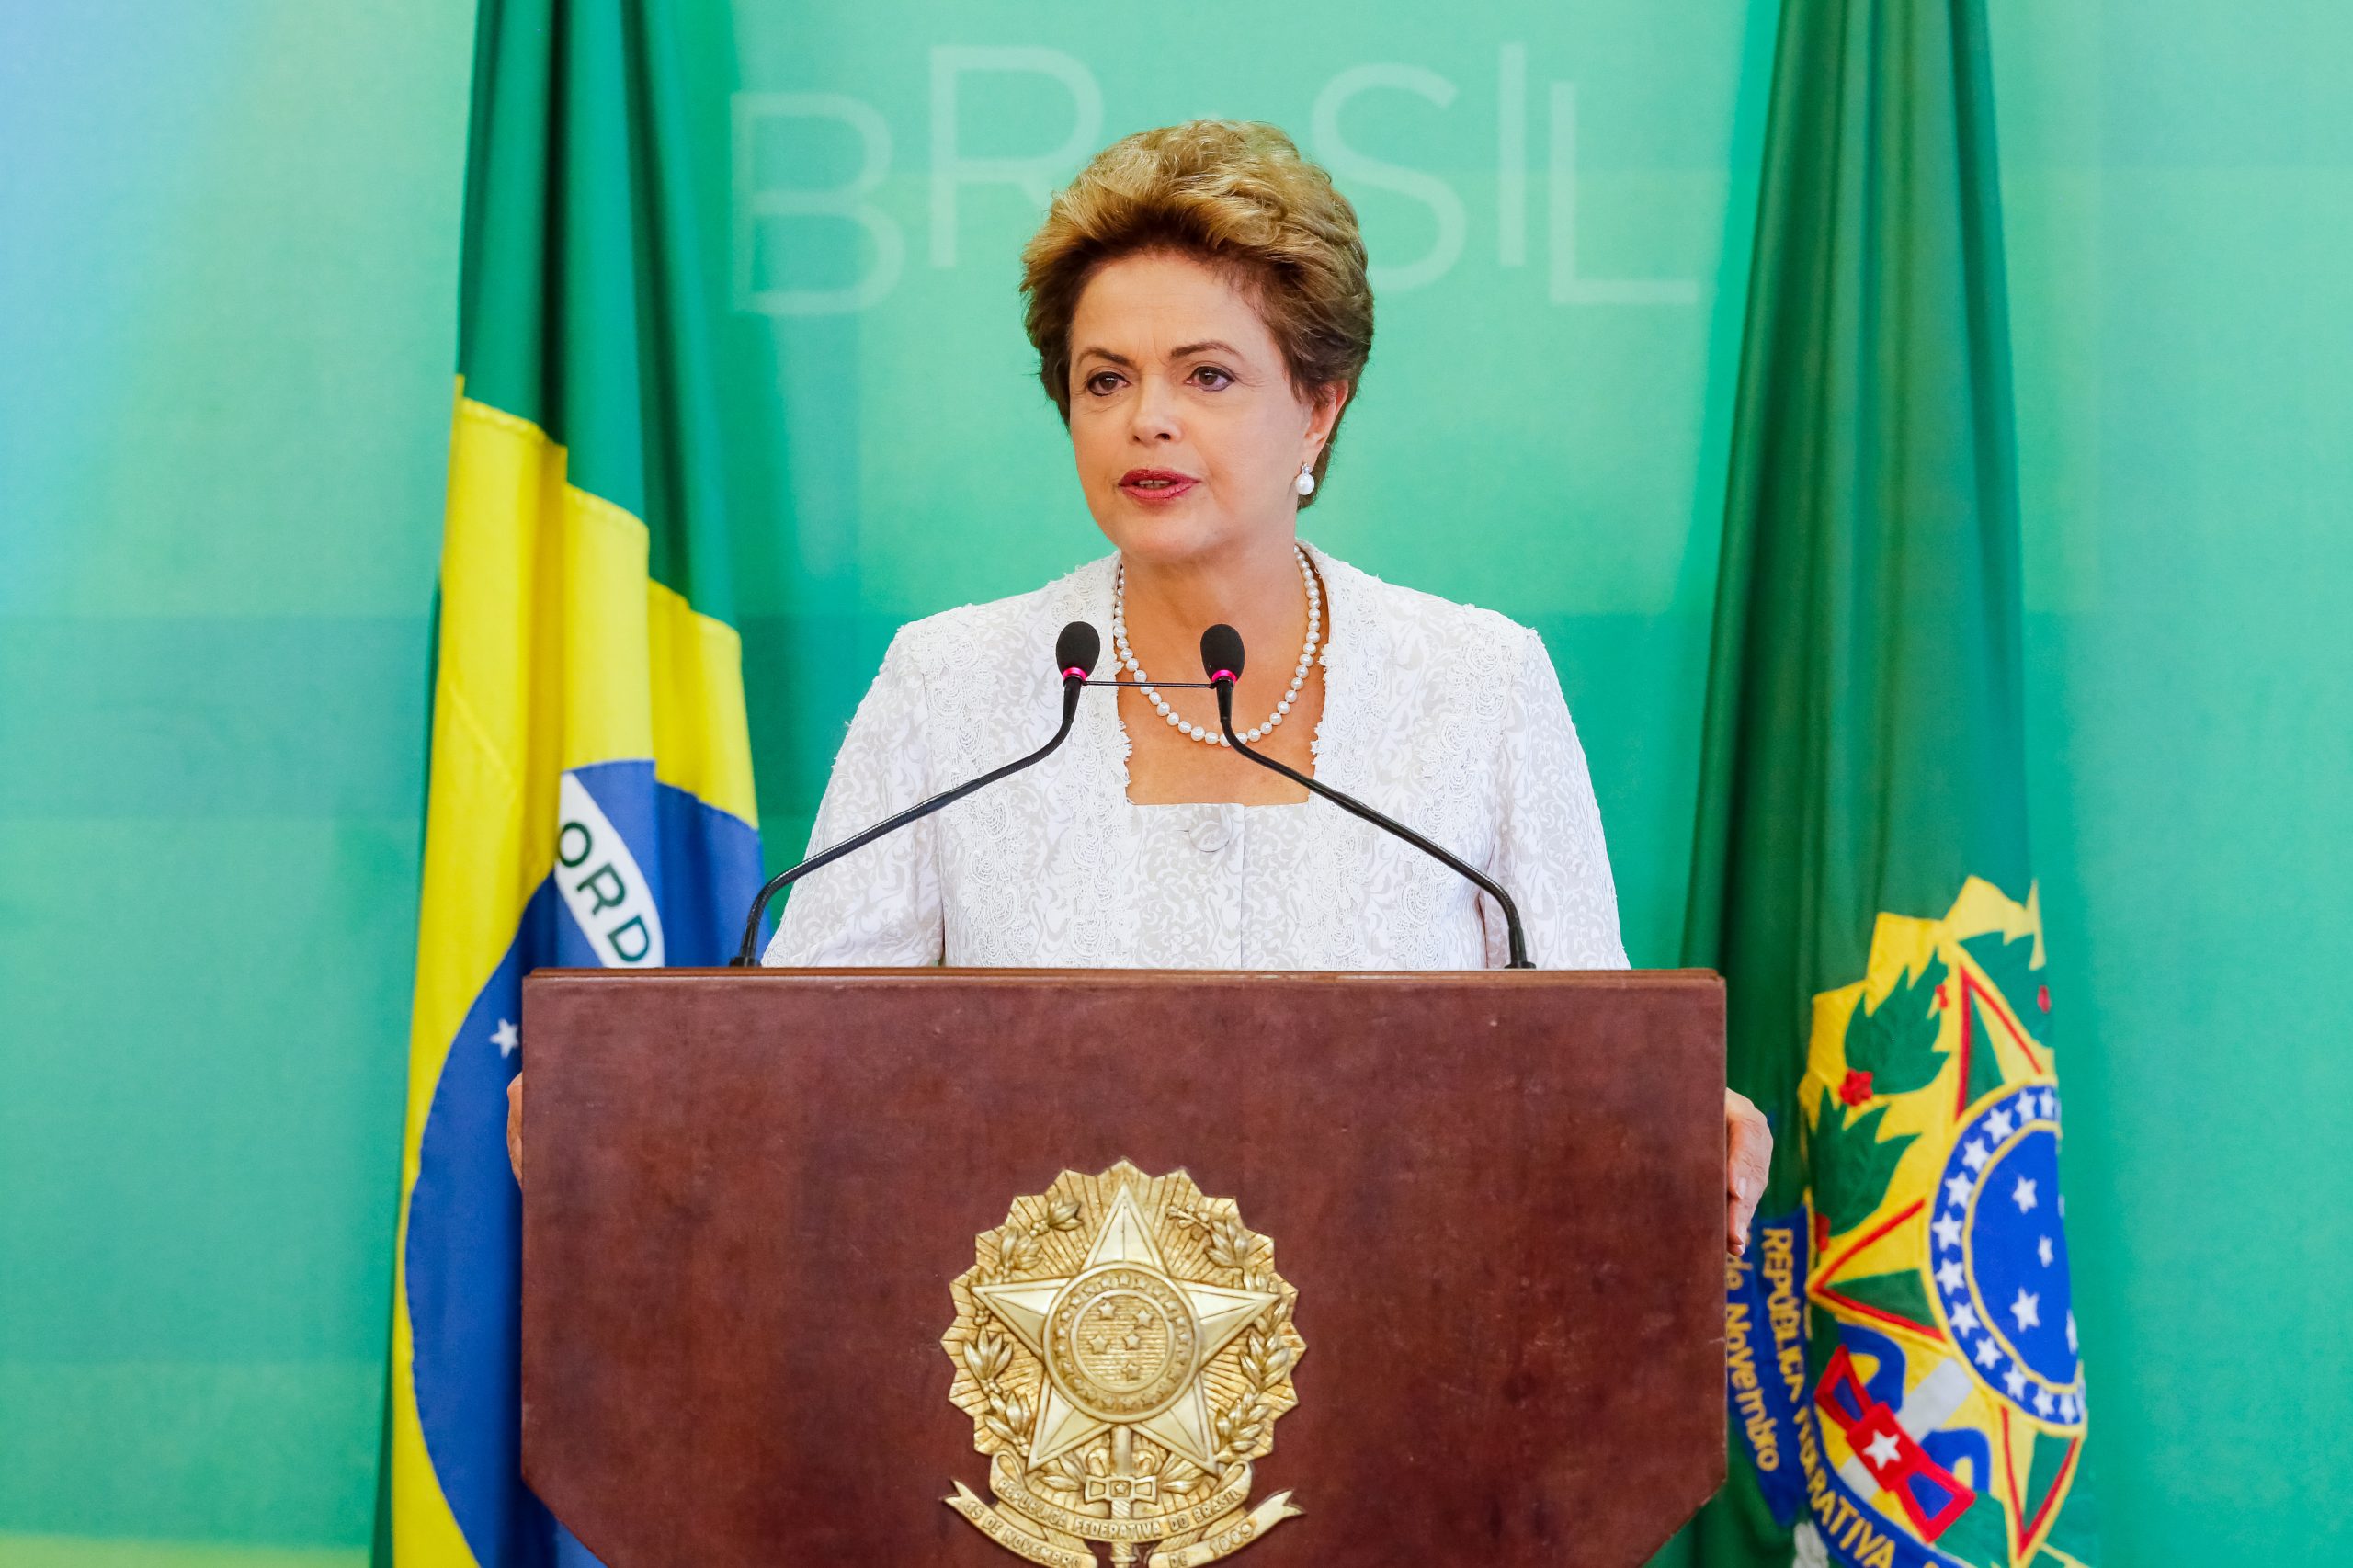 Nova estrutura de governo garantirá estabilidade política e trará racionalidade na gestão pública, afirma Dilma